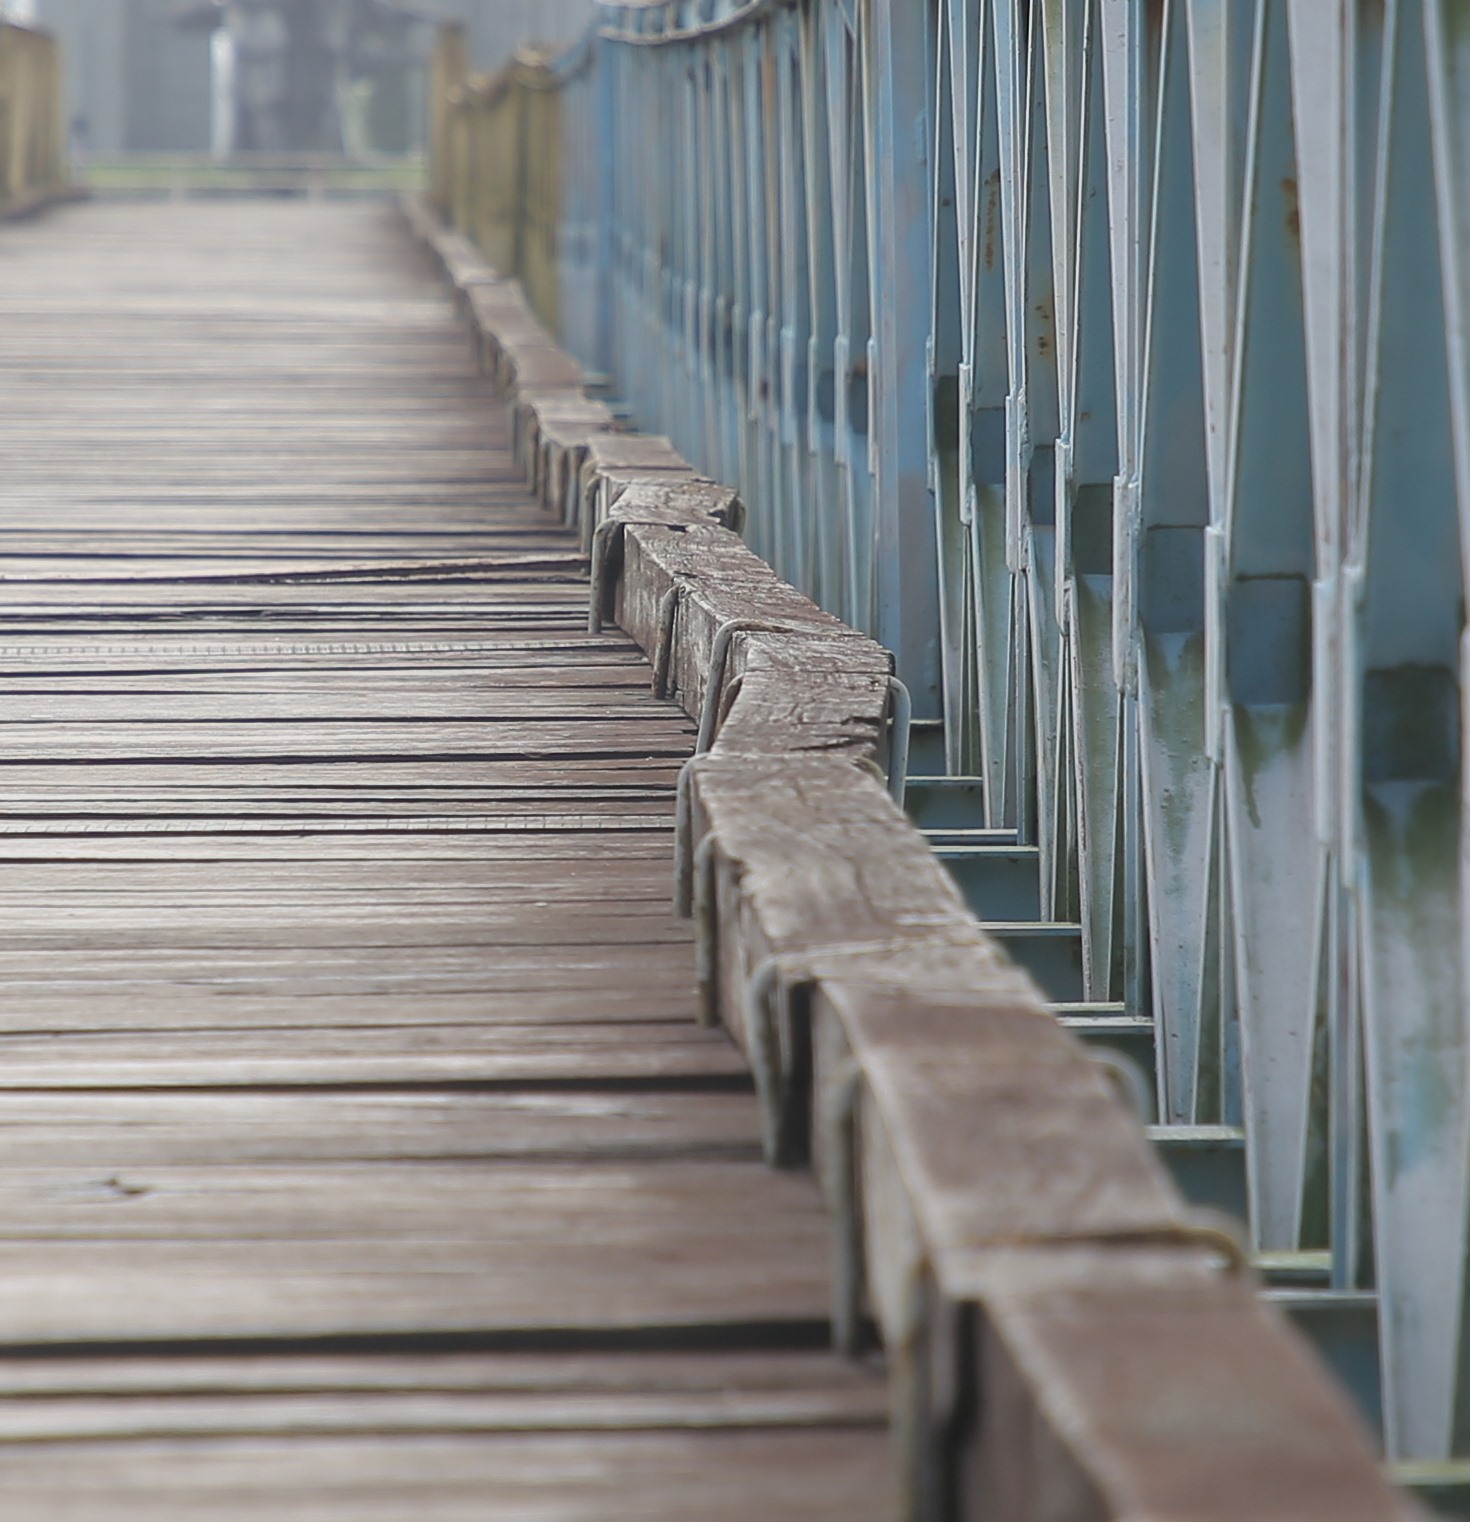 Hiện tại, trên cầu Hiền Lương xuất hiện nhiều điểm xuống cấp. Thậm chí, các nhịp ở giữa cầu bị trũng xuống, khiến các thanh gỗ được cố định trên cầu xiên xẹo.